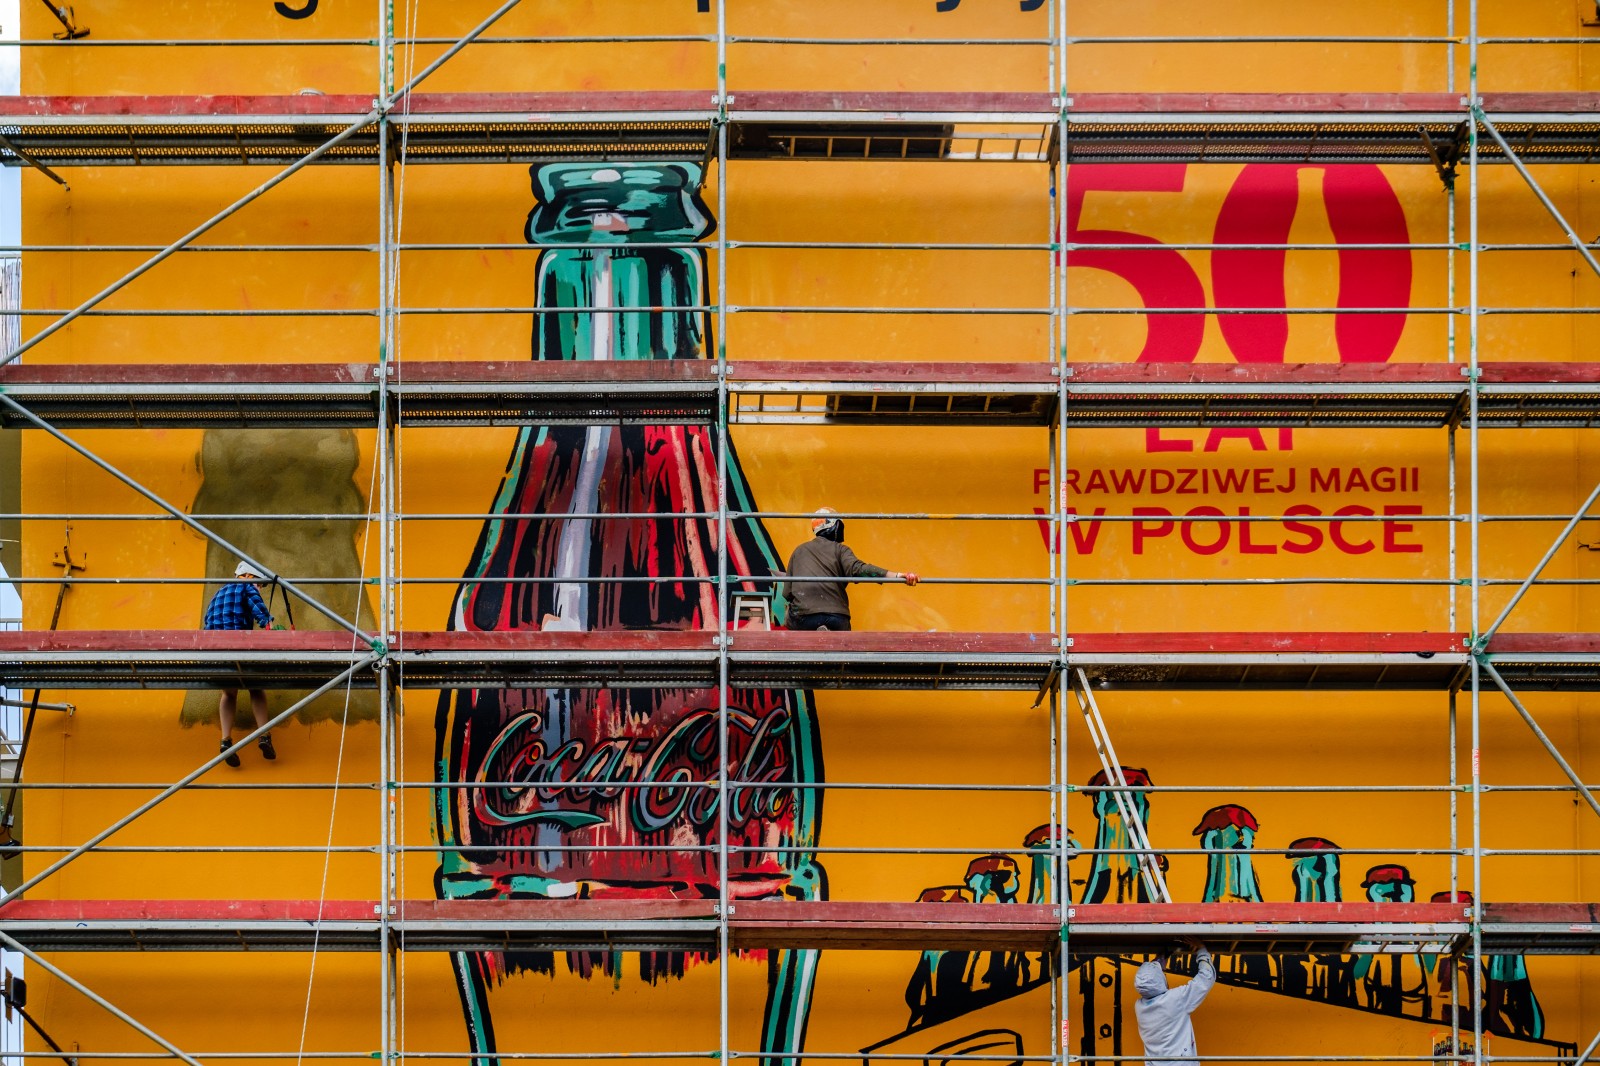 Large format Coca-Cola Retro advertisment în Katowice | 50 lat prawdziwej magii w Polsce (retro) | Portfolio